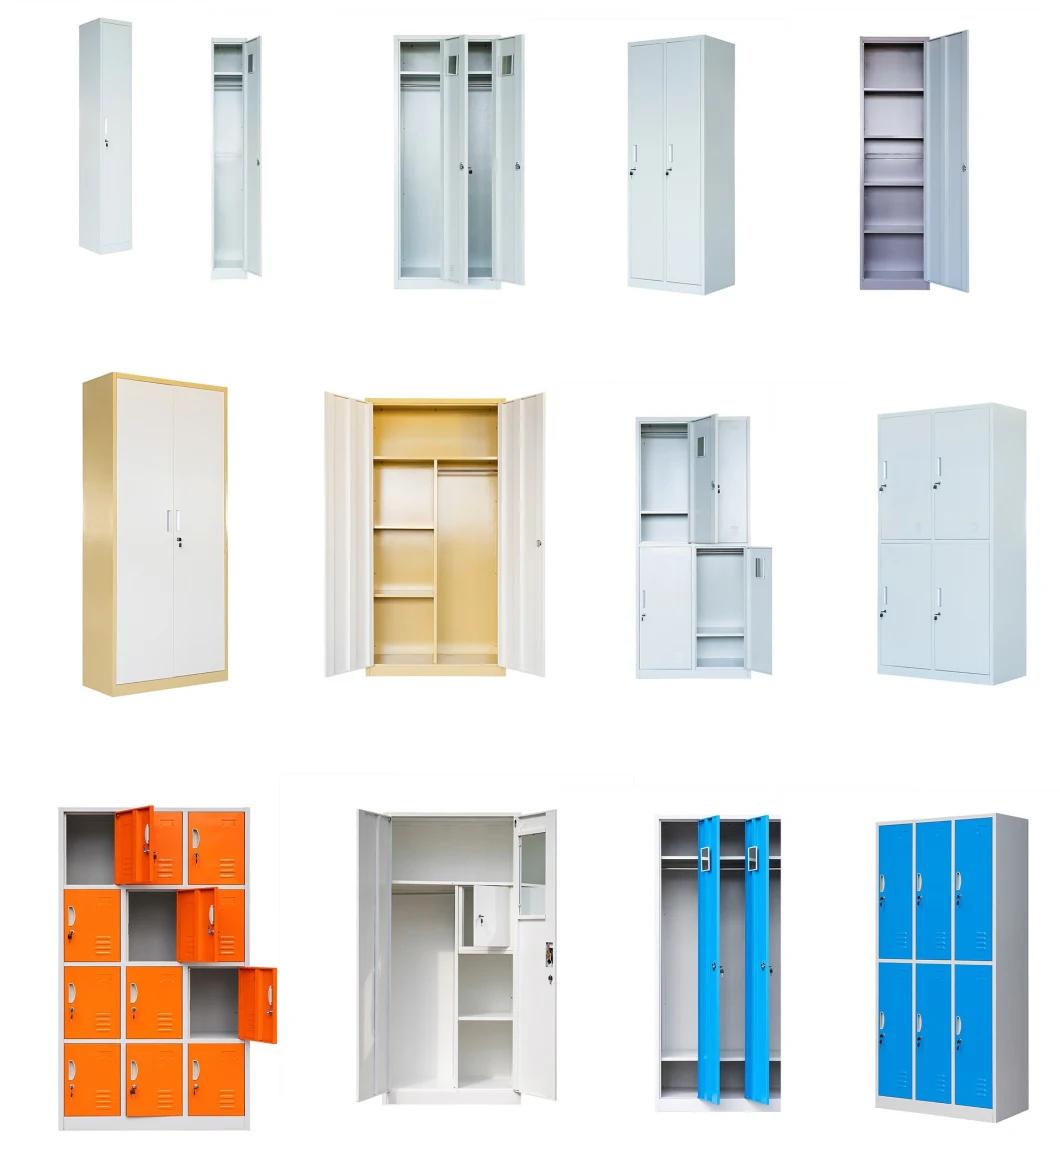 3 Door Steel Storage Almirah Alosets Metal Clothes Locker